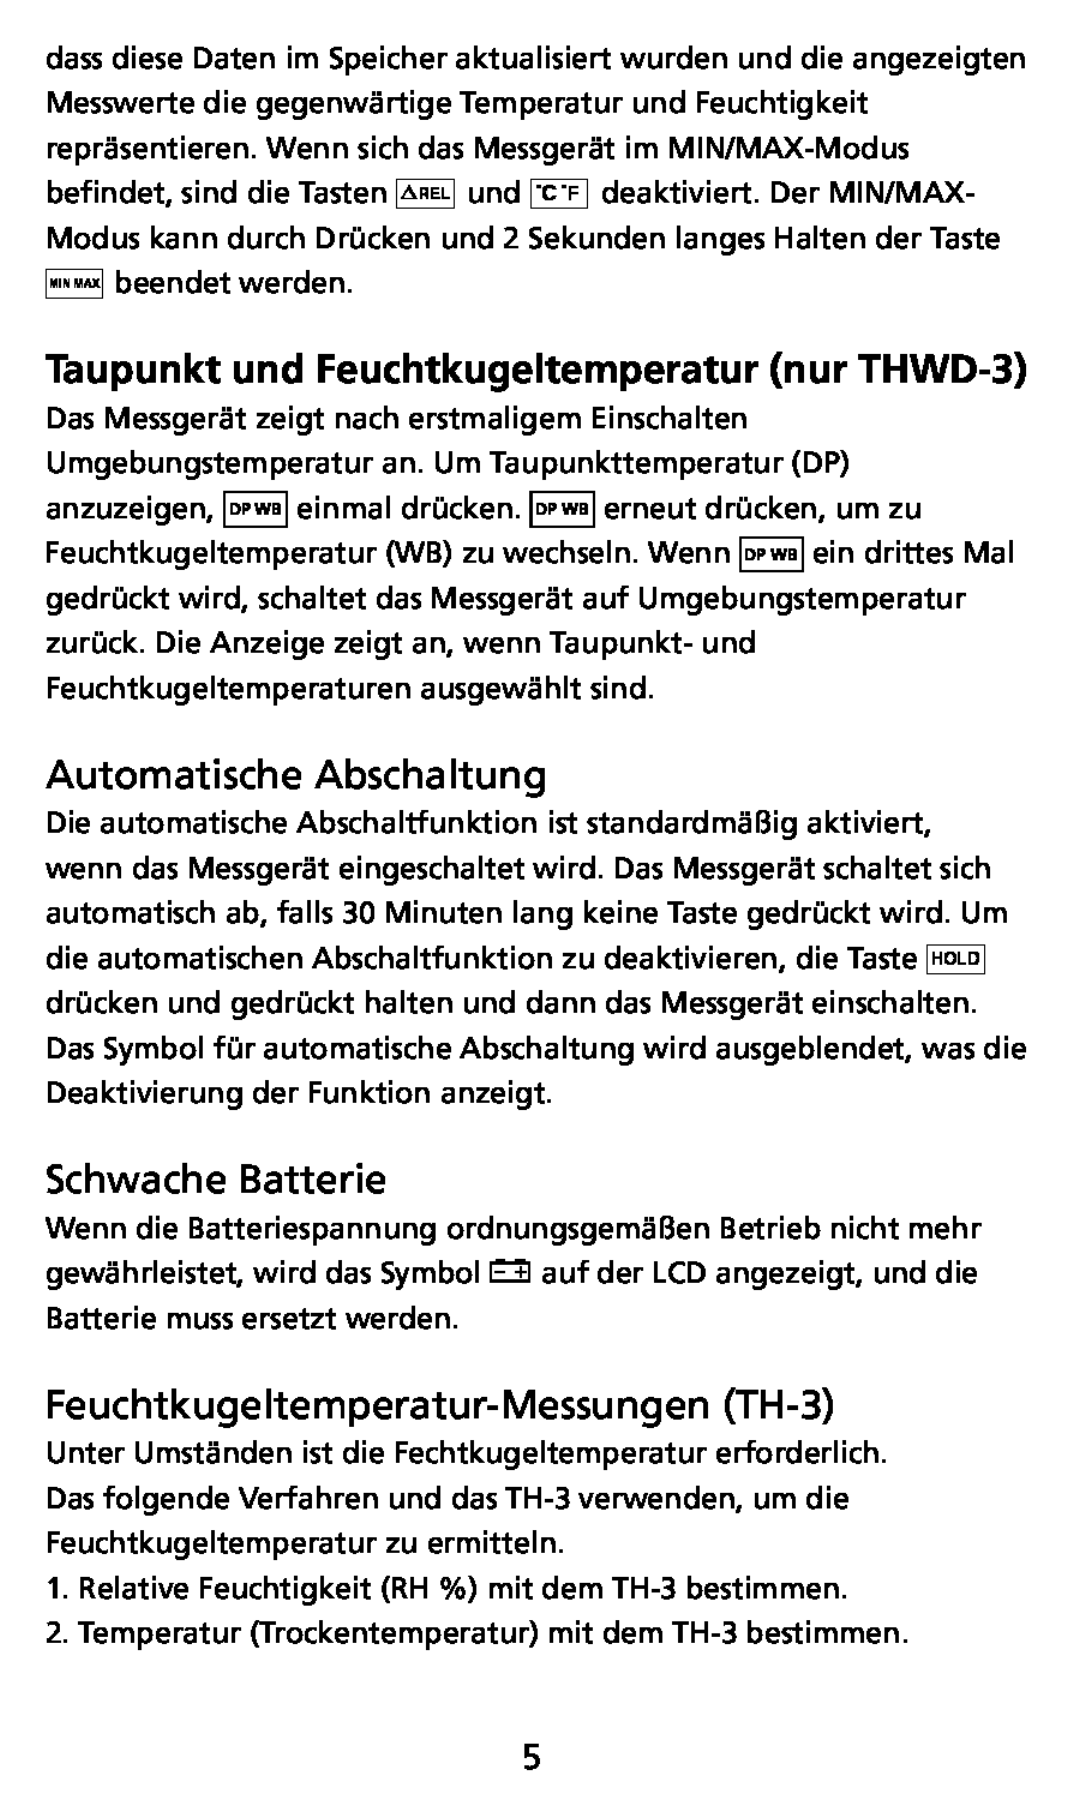 Ampro Corporation THWD-3 user manual Automatische Abschaltung, Schwache Batterie, Feuchtkugeltemperatur-Messungen TH-3 